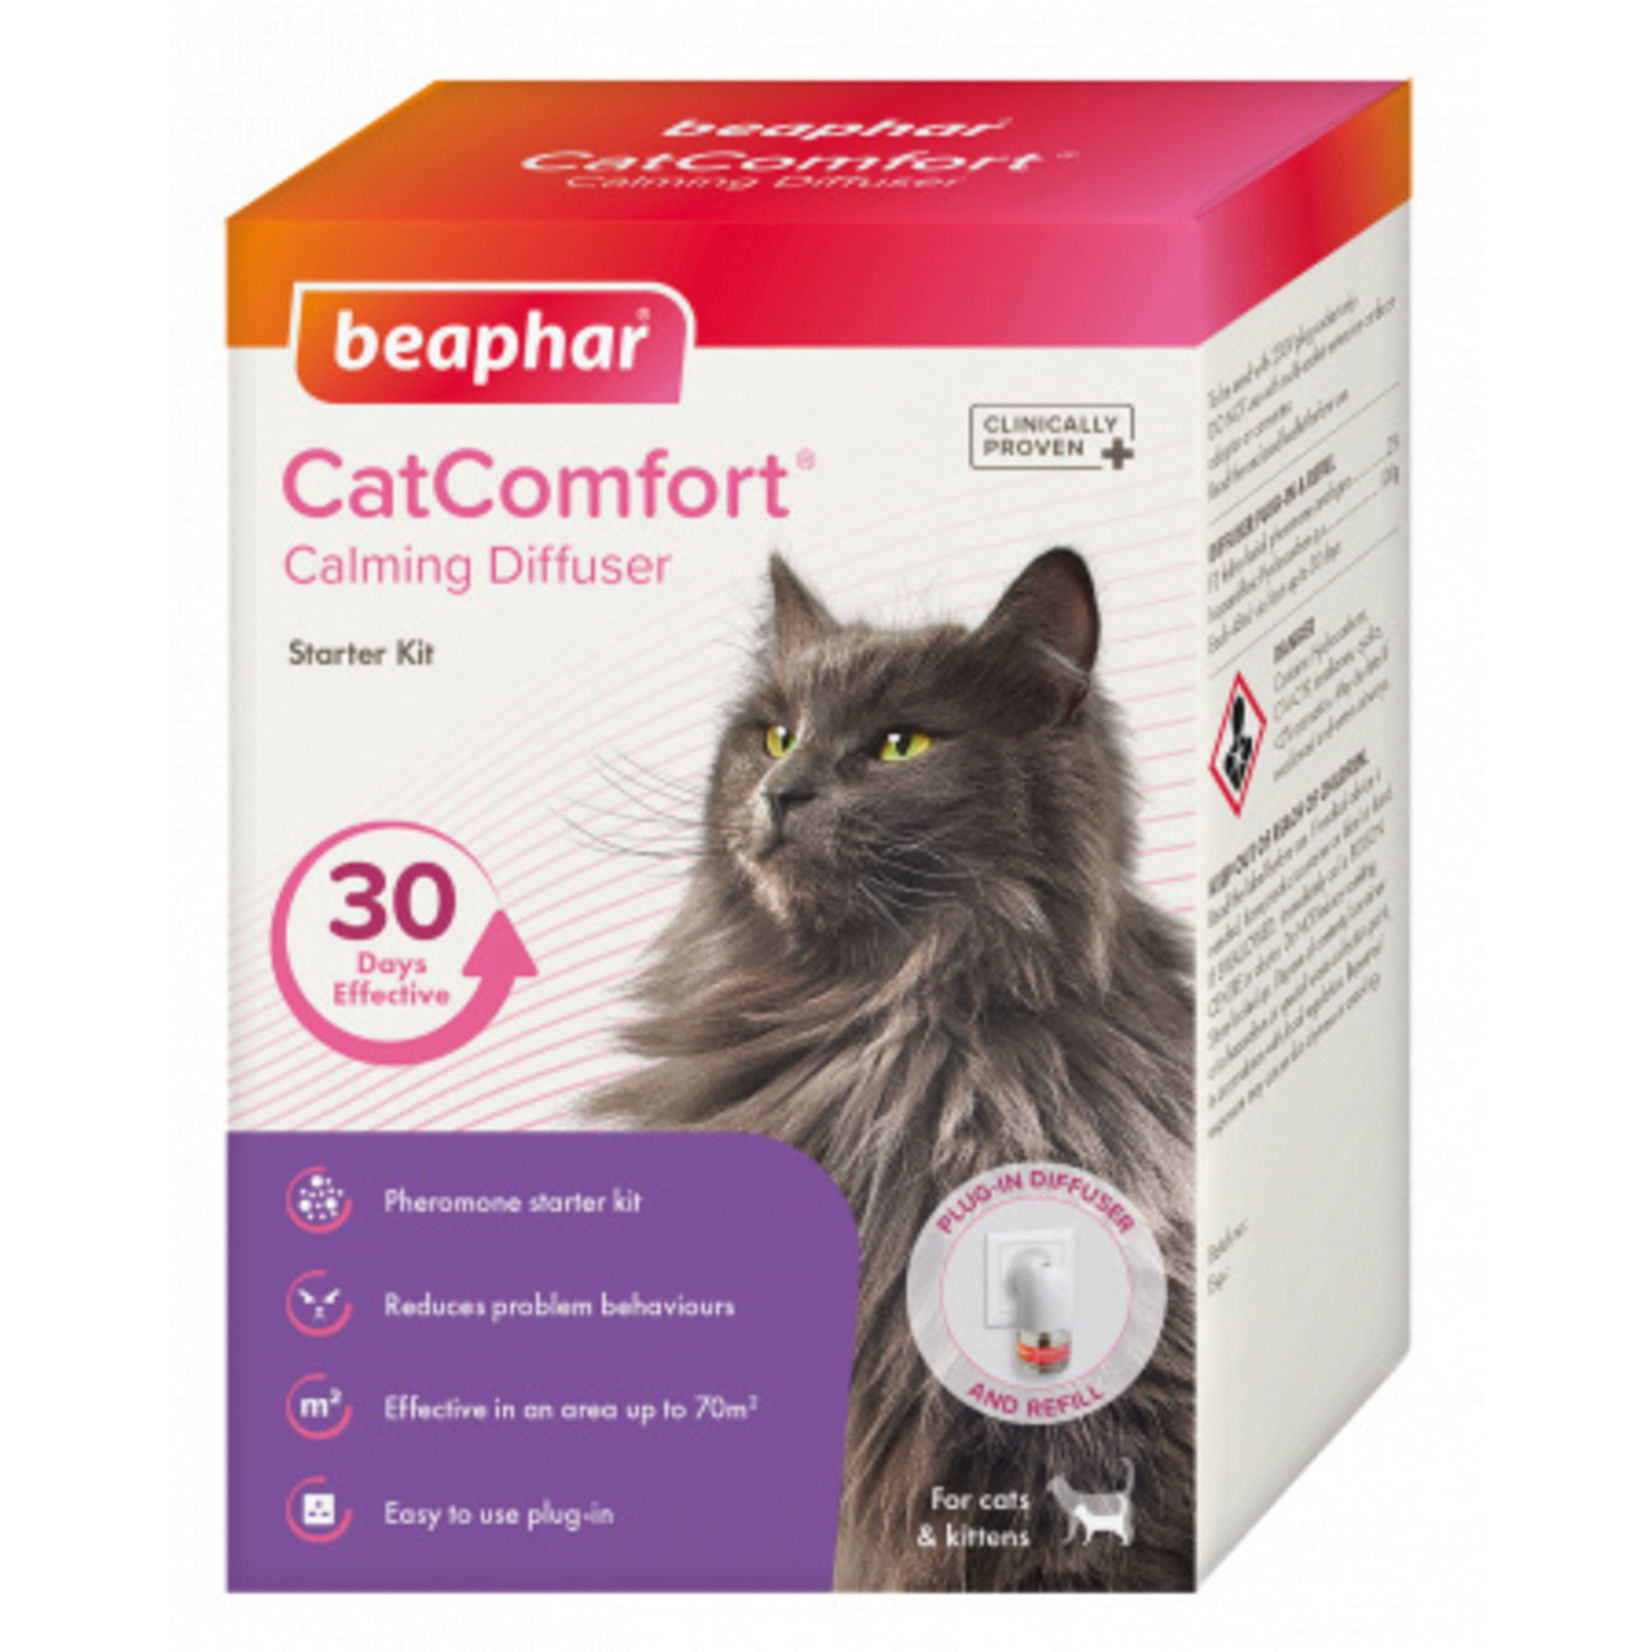 Beaphar CatComfort Calming Diffuser Starter Kit, 30 Days